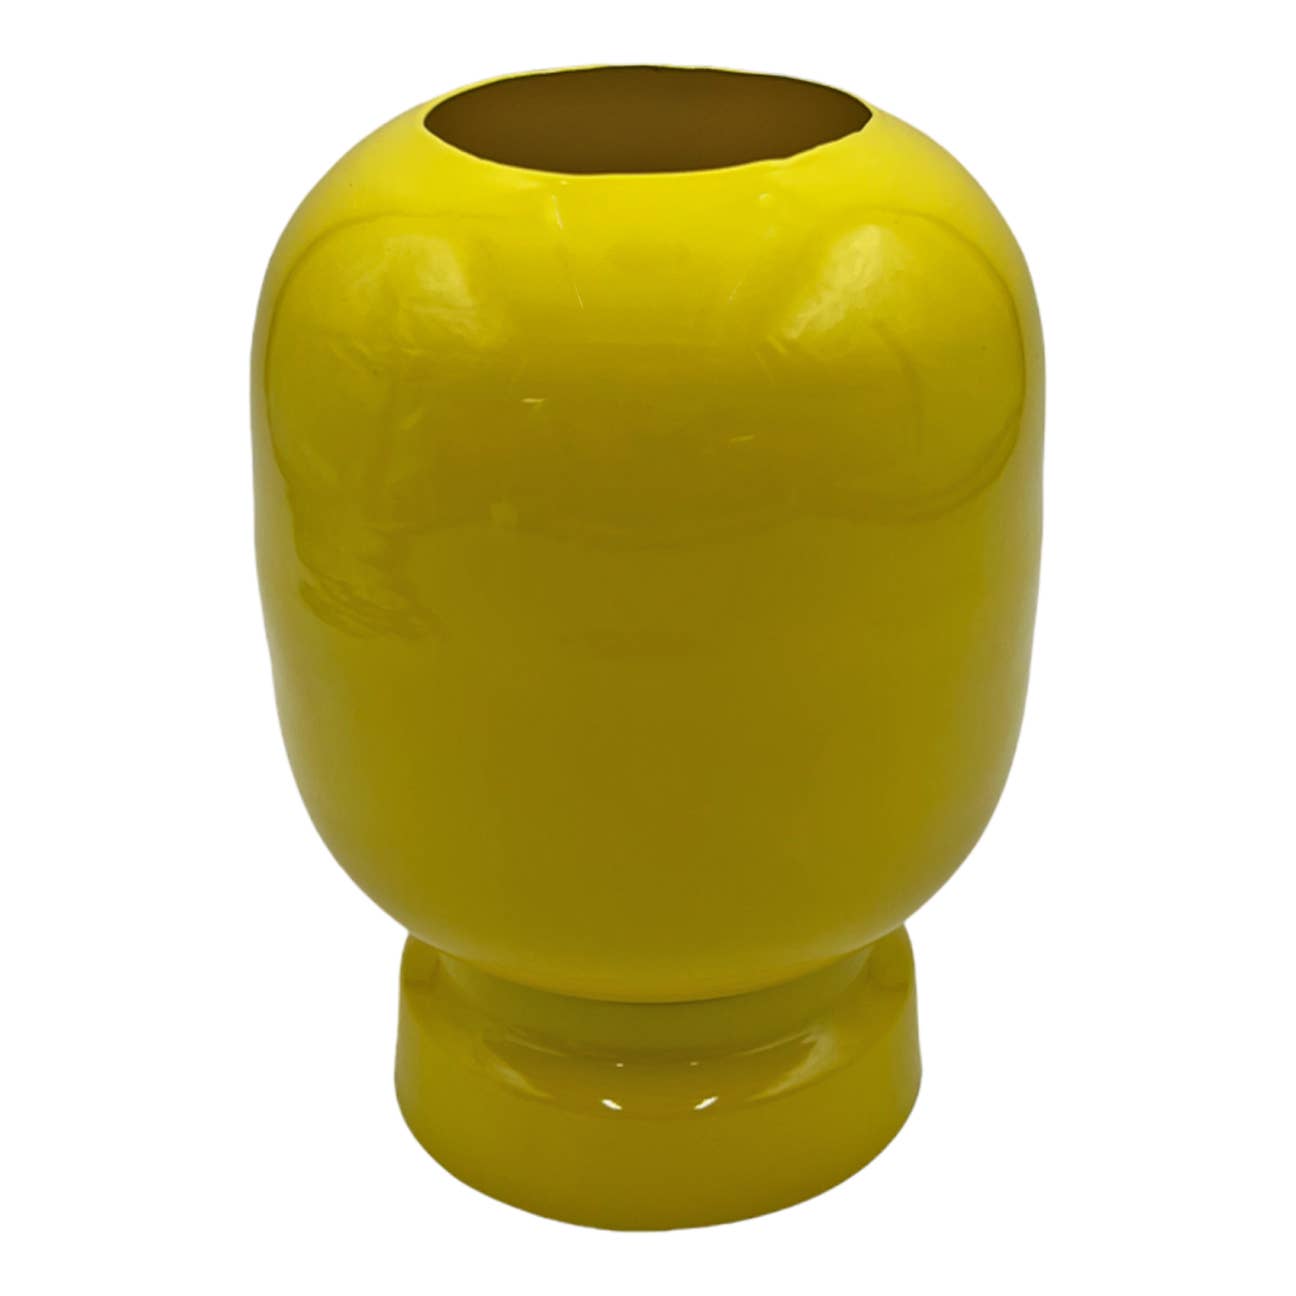 8" High Iron Round Planter Vase: Lavender